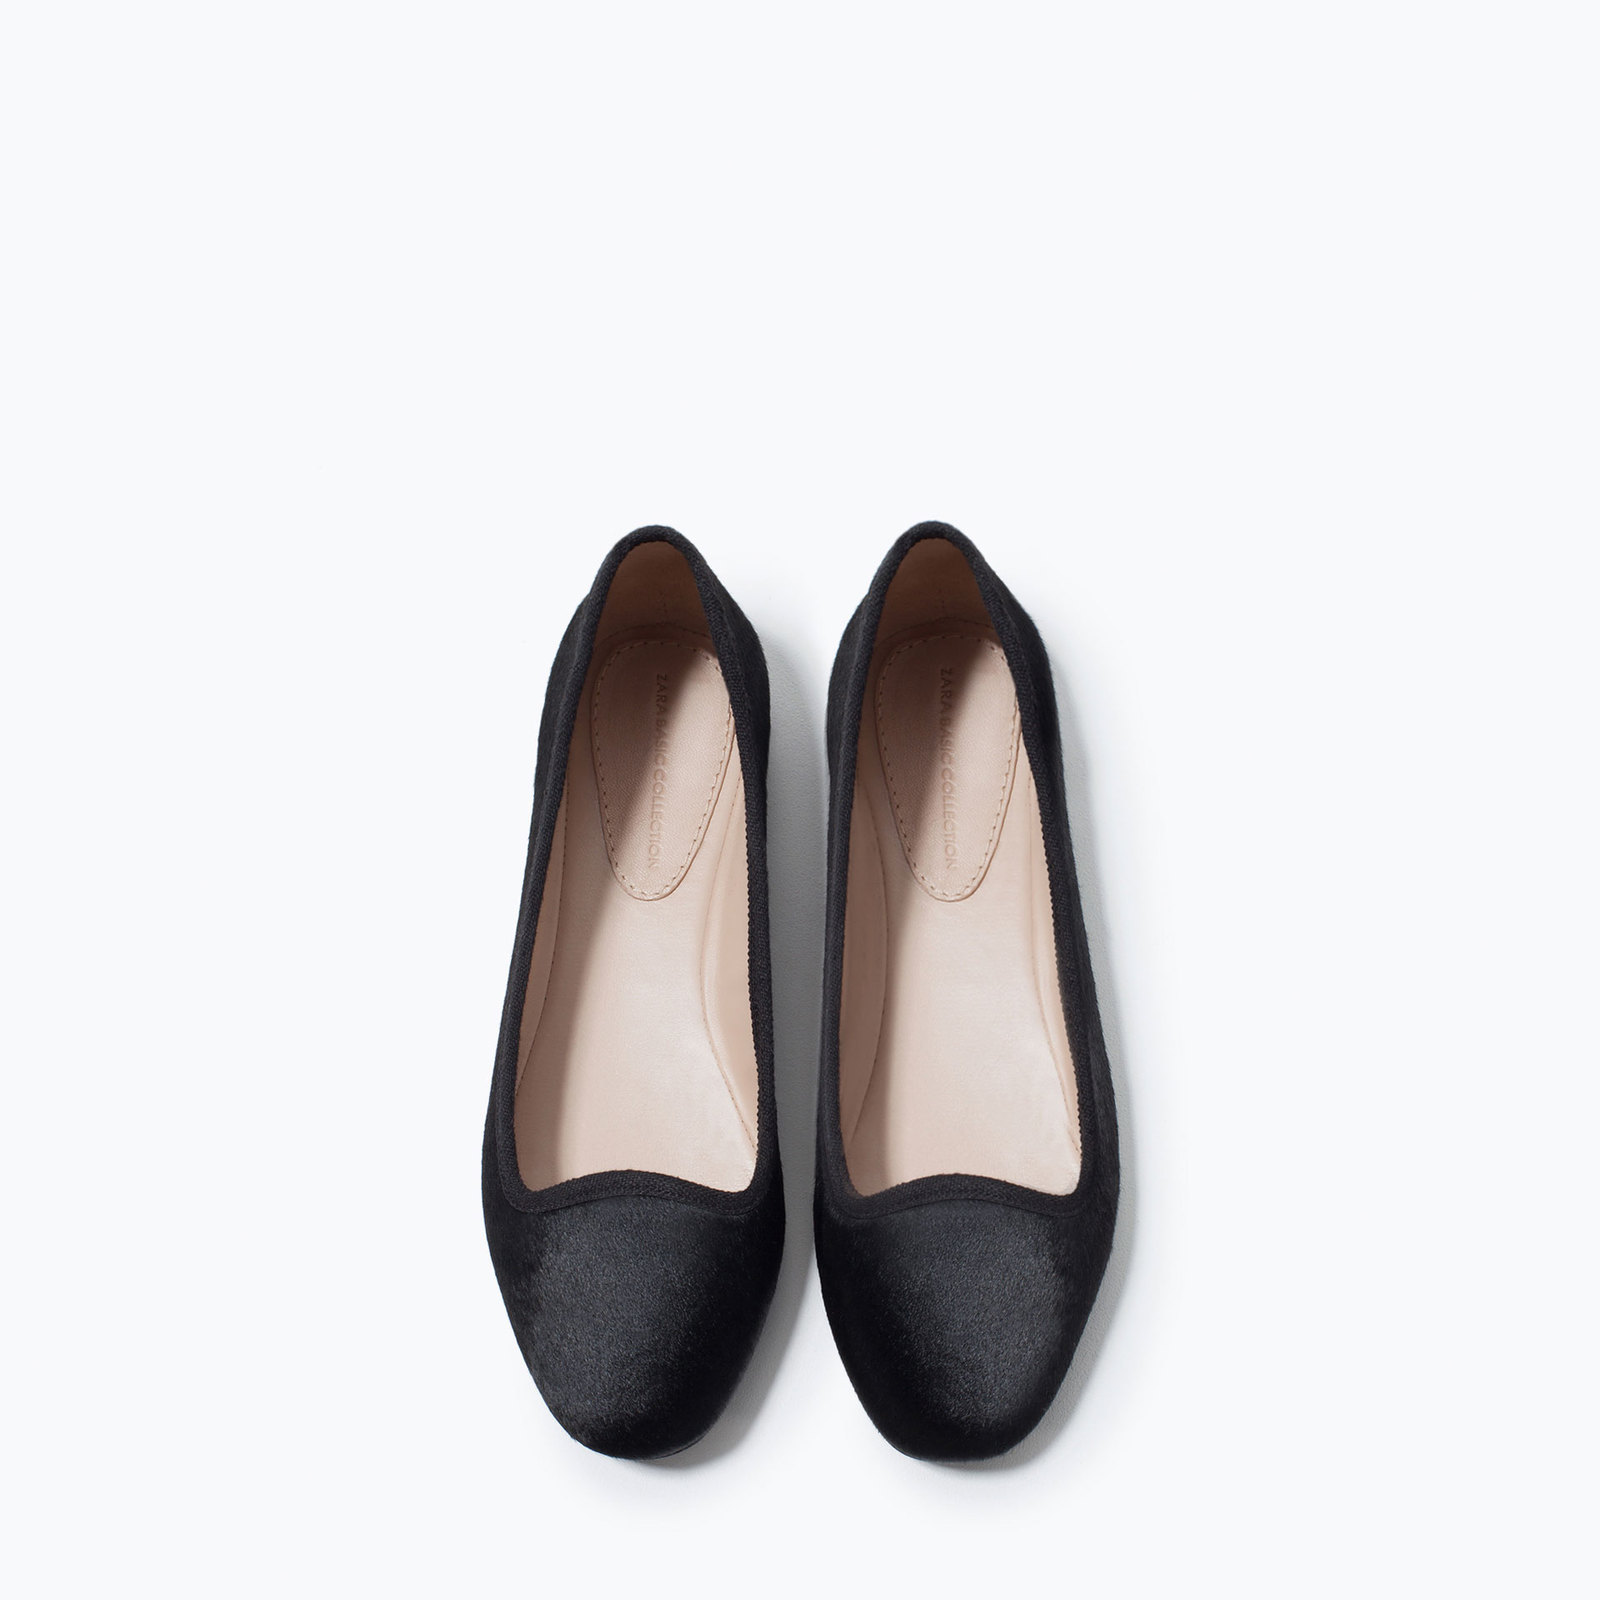 Zara fekete bőr slip-on cipő 2015.02.23 fotója